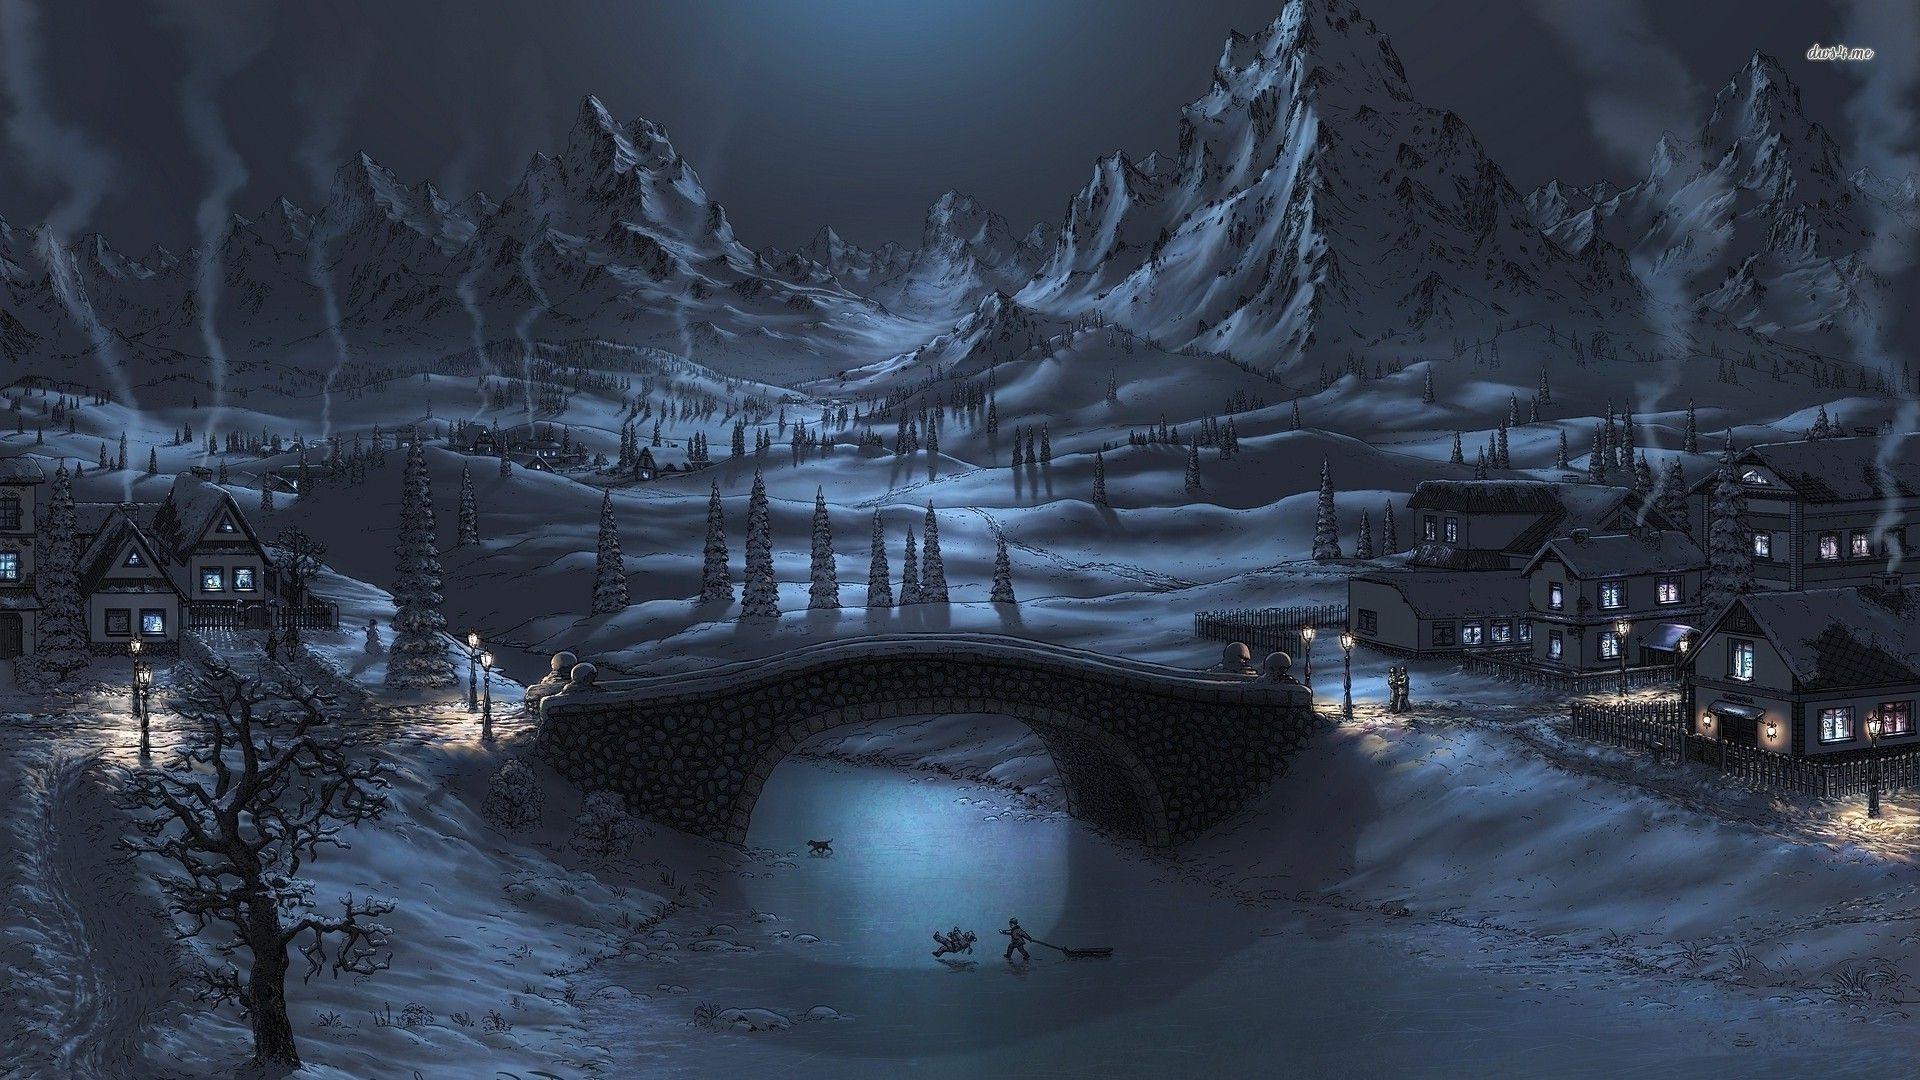 Winter Night, 1920x1080 Maud Meder. Winter landscape